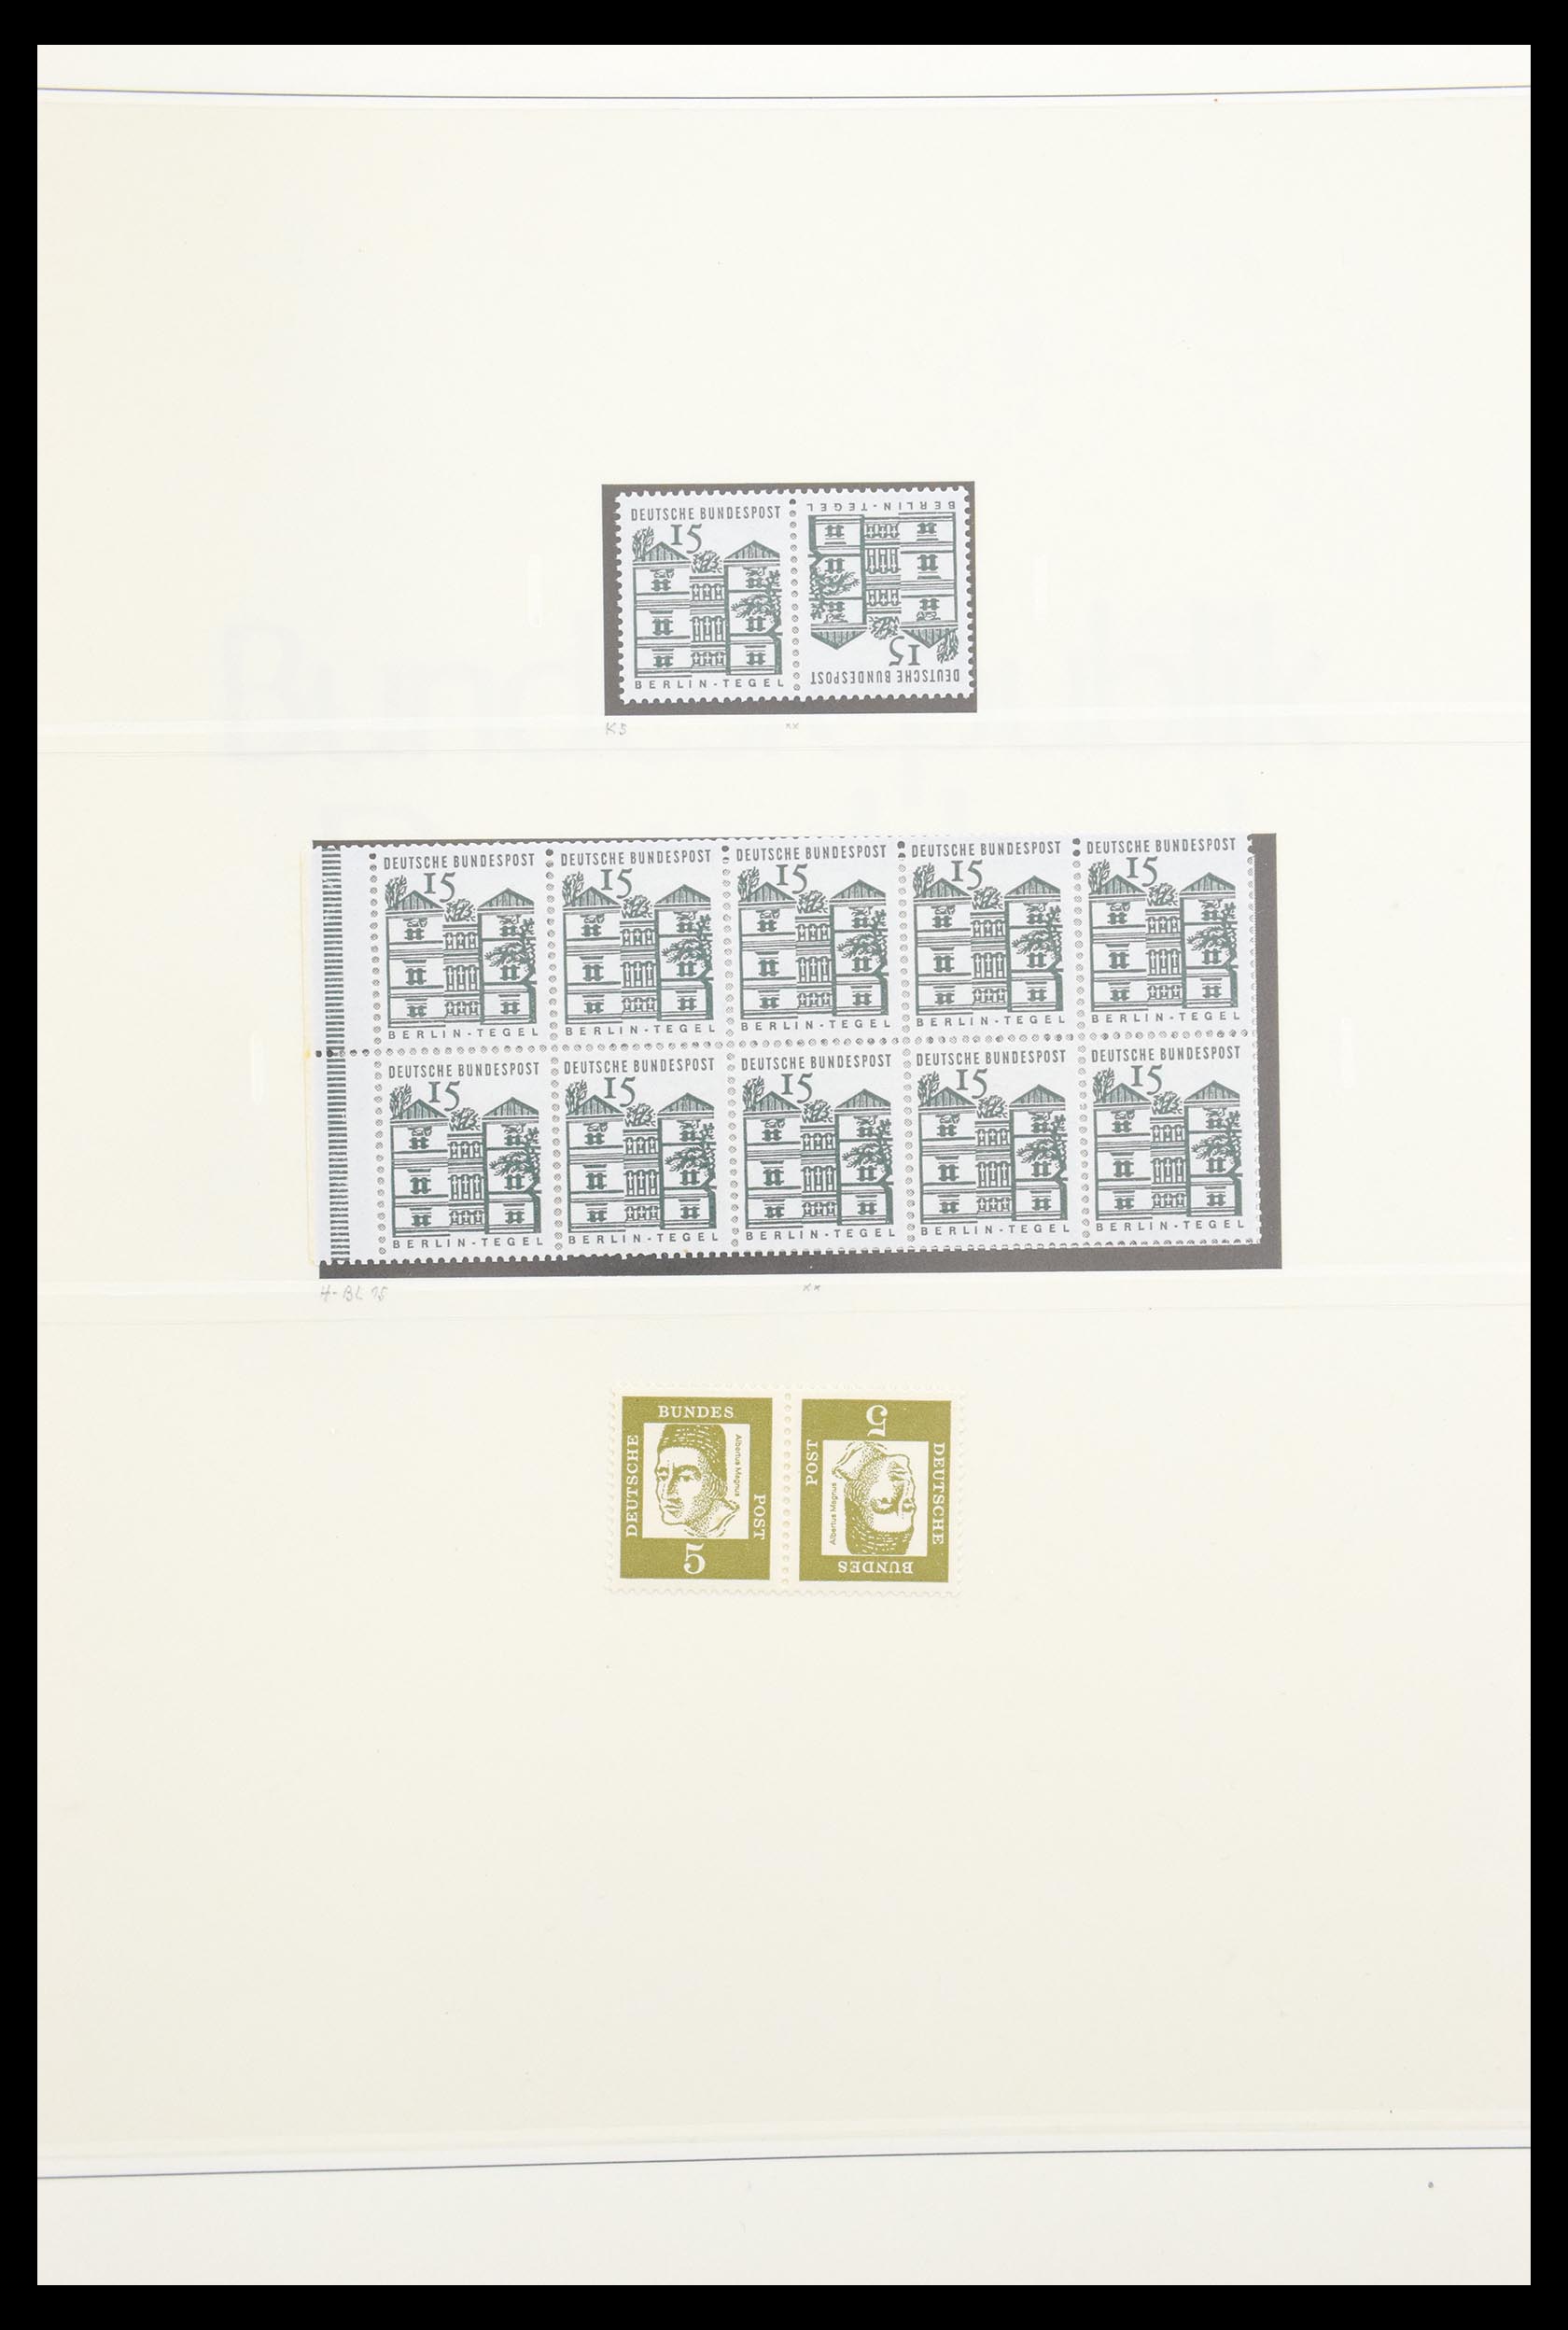 30605 022 - 30605 Bundespost combinations 1951-1974.